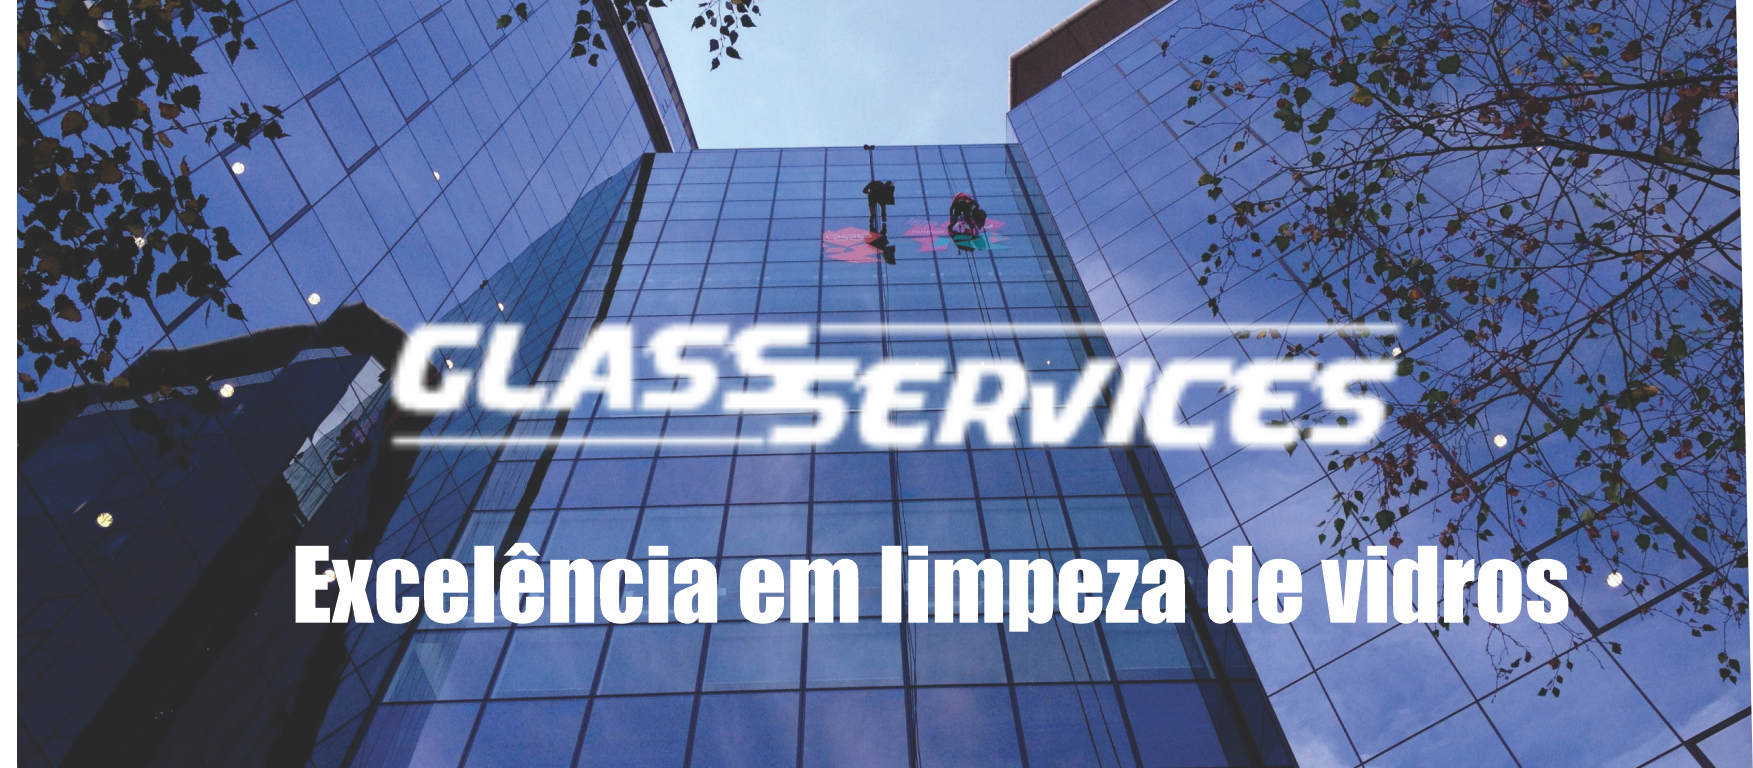 Glass Services Excelência em Limpeza de Vidros      AVENIDA DAS INDÚSTRIAS, 1600, CURITIBA - PR  Fones: (41) 9950-5493 /